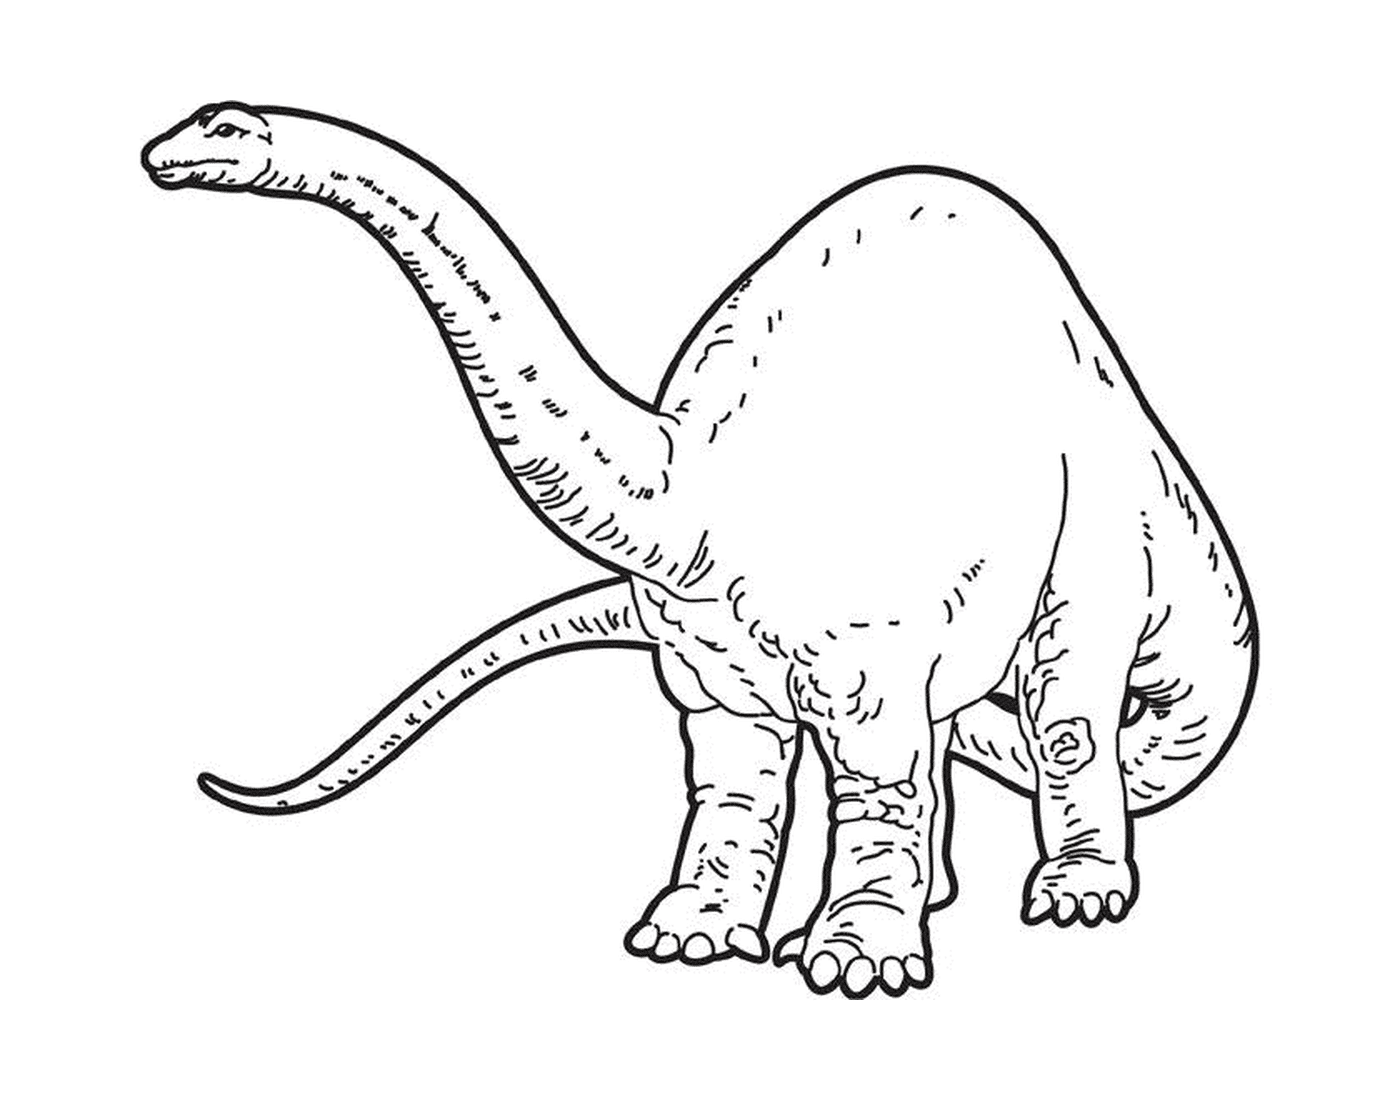  Um dinossauro com uma cauda longa 